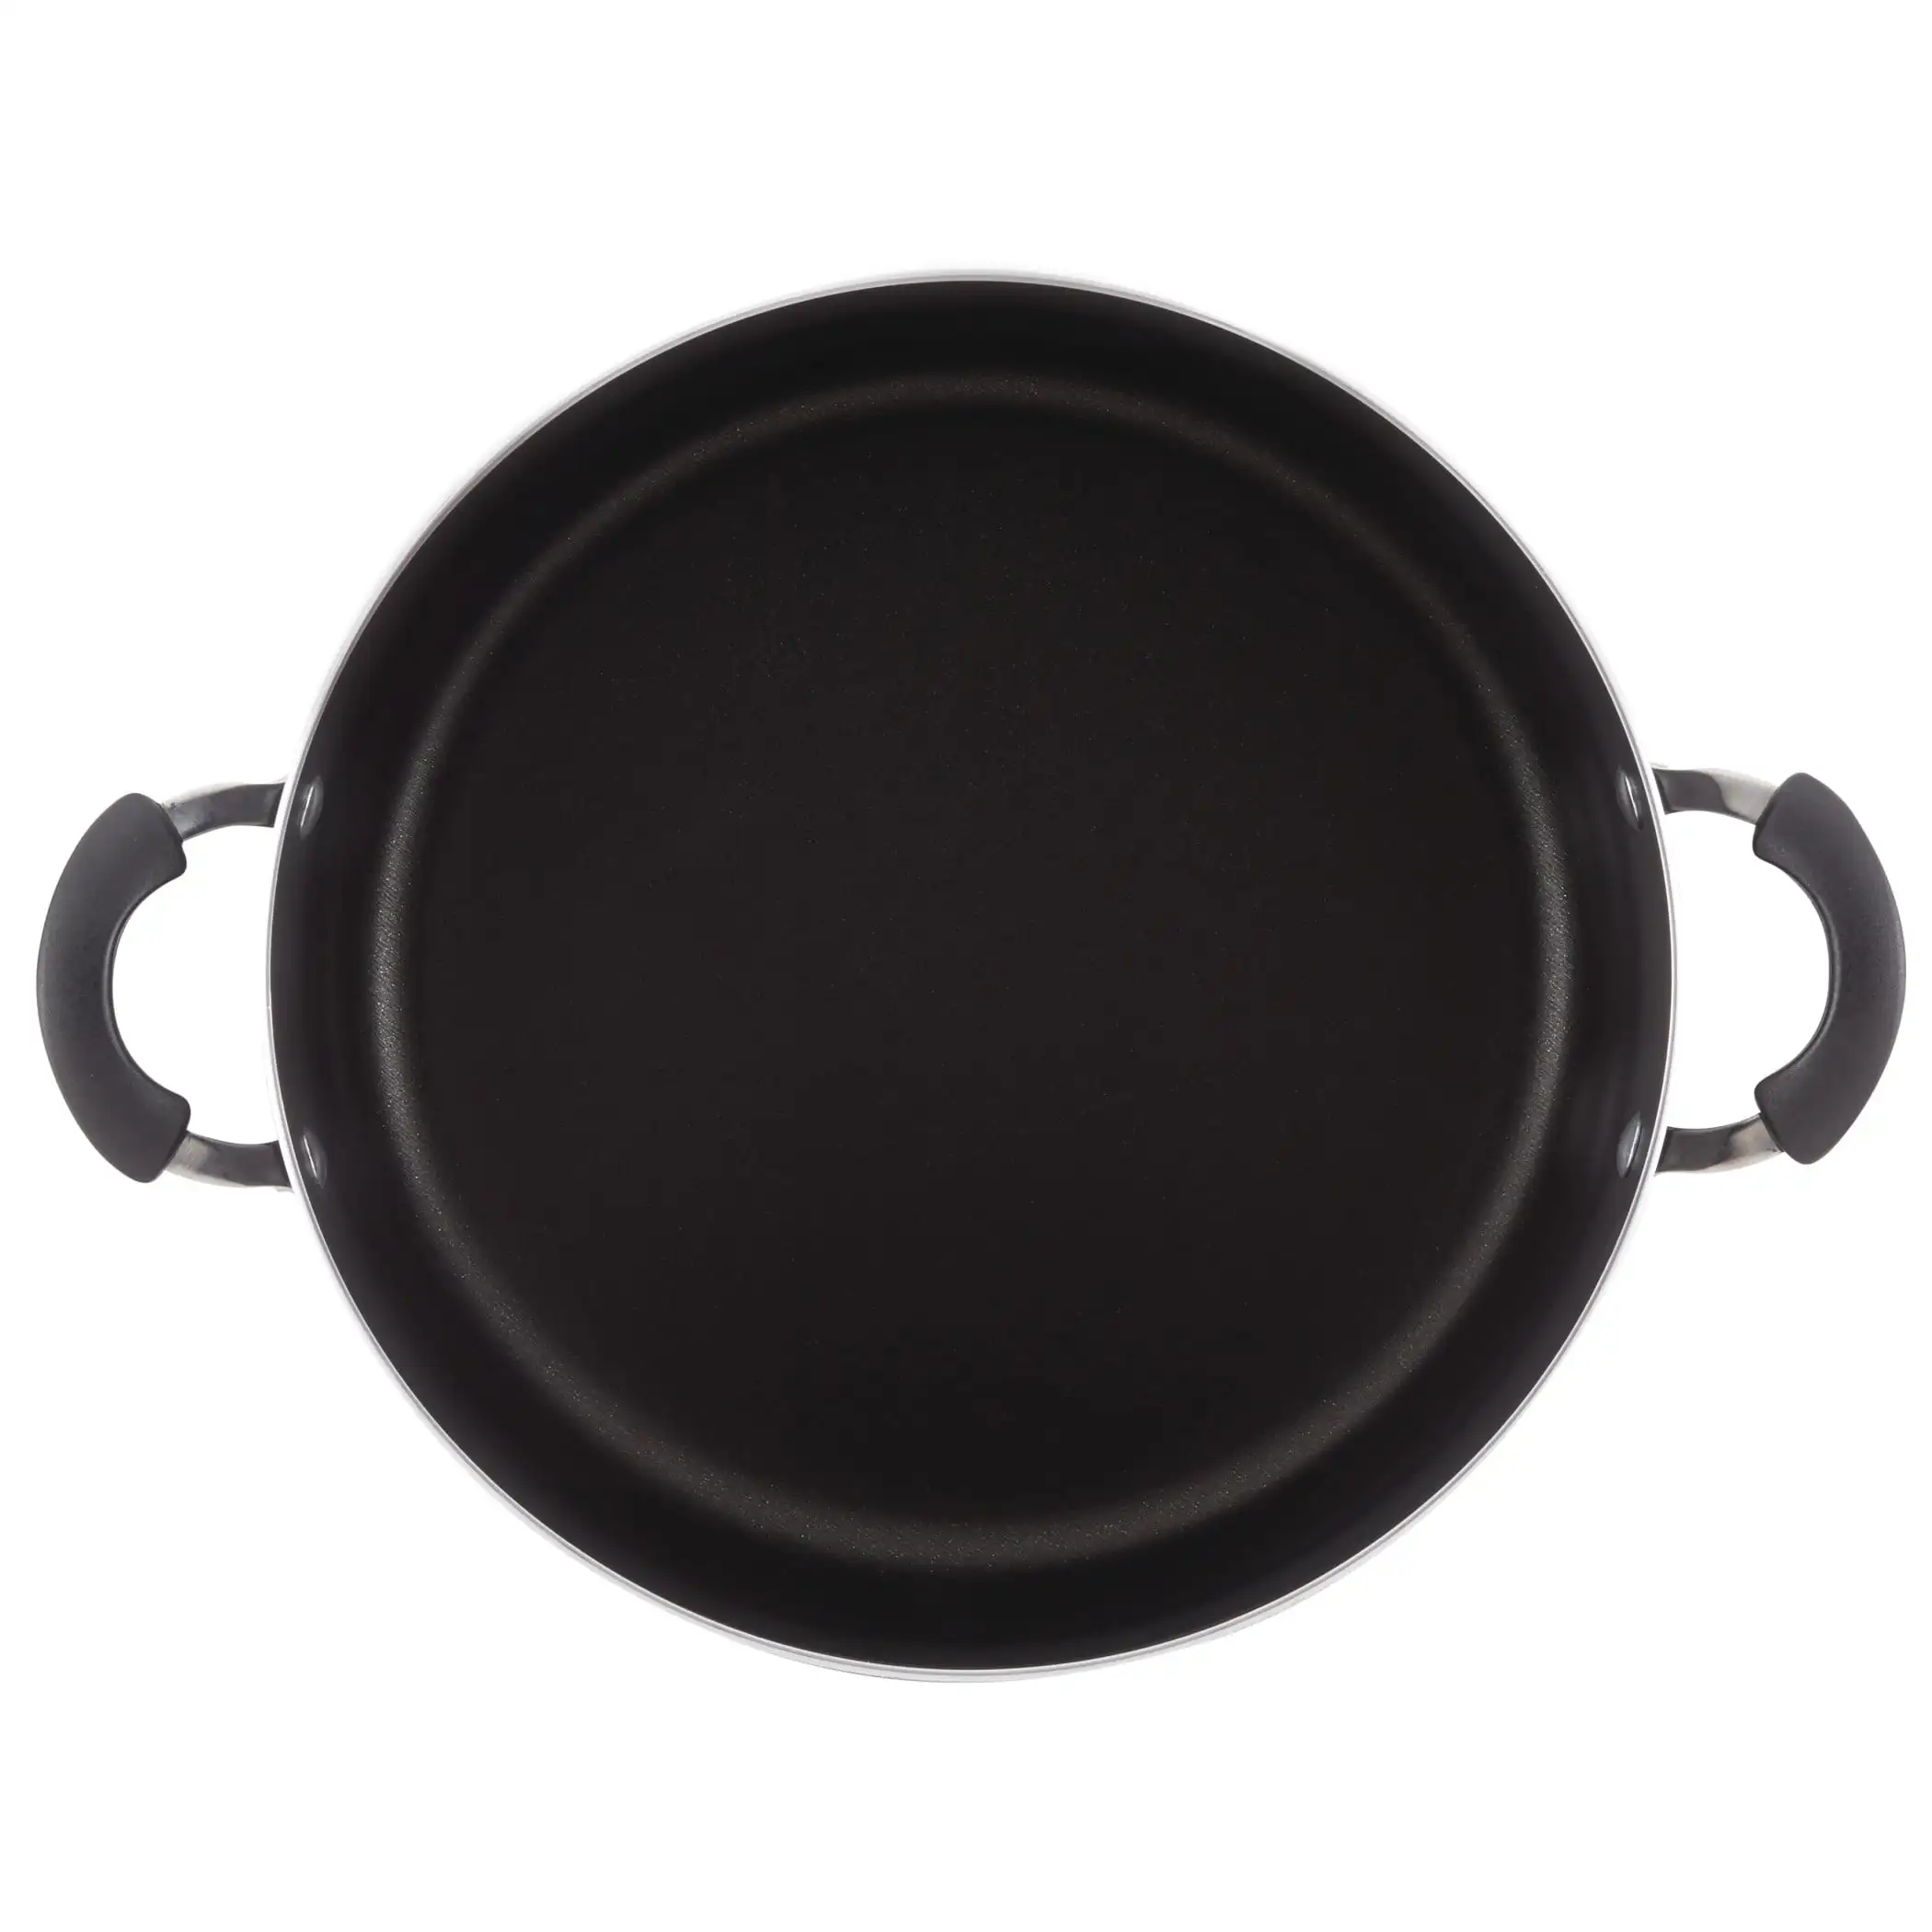 Бренд Farberware, Легкая очистка, 8 Кварт, алюминиевый антипригарный горшок, черный цвет